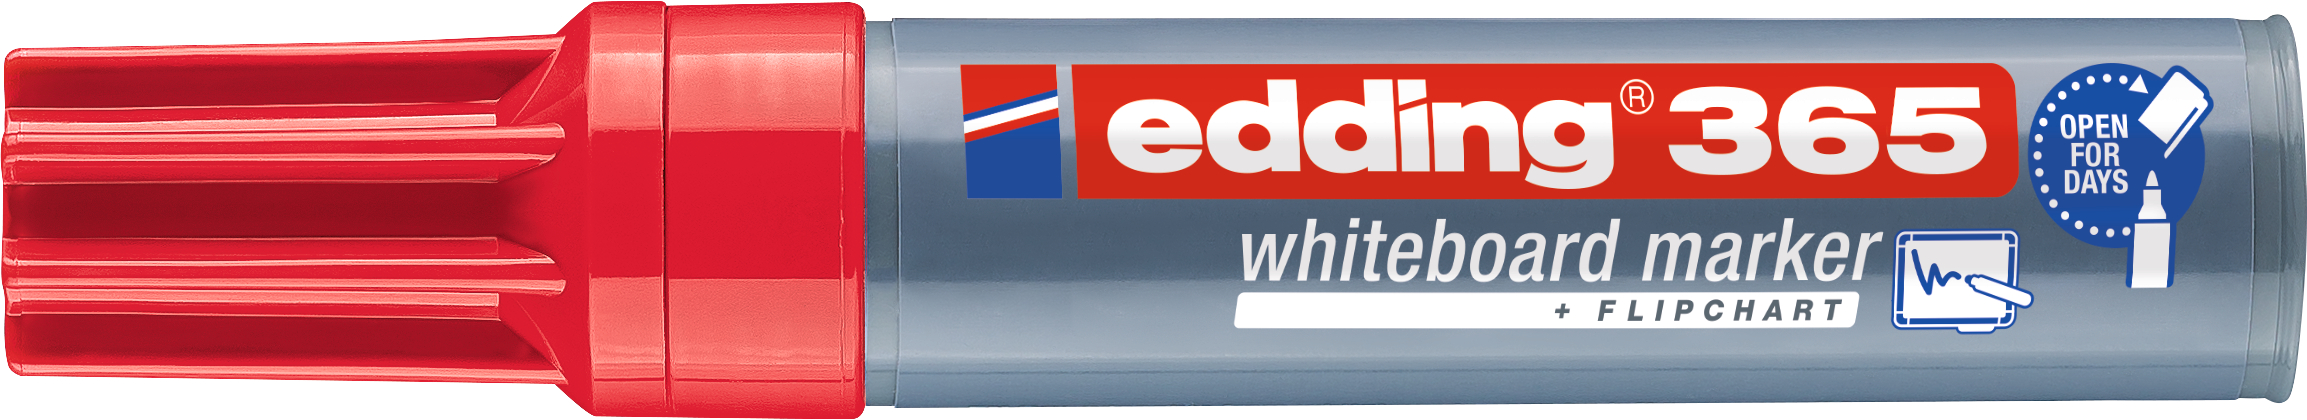 EDDING Whiteboard Marker 365 2-7mm 365-002 rouge